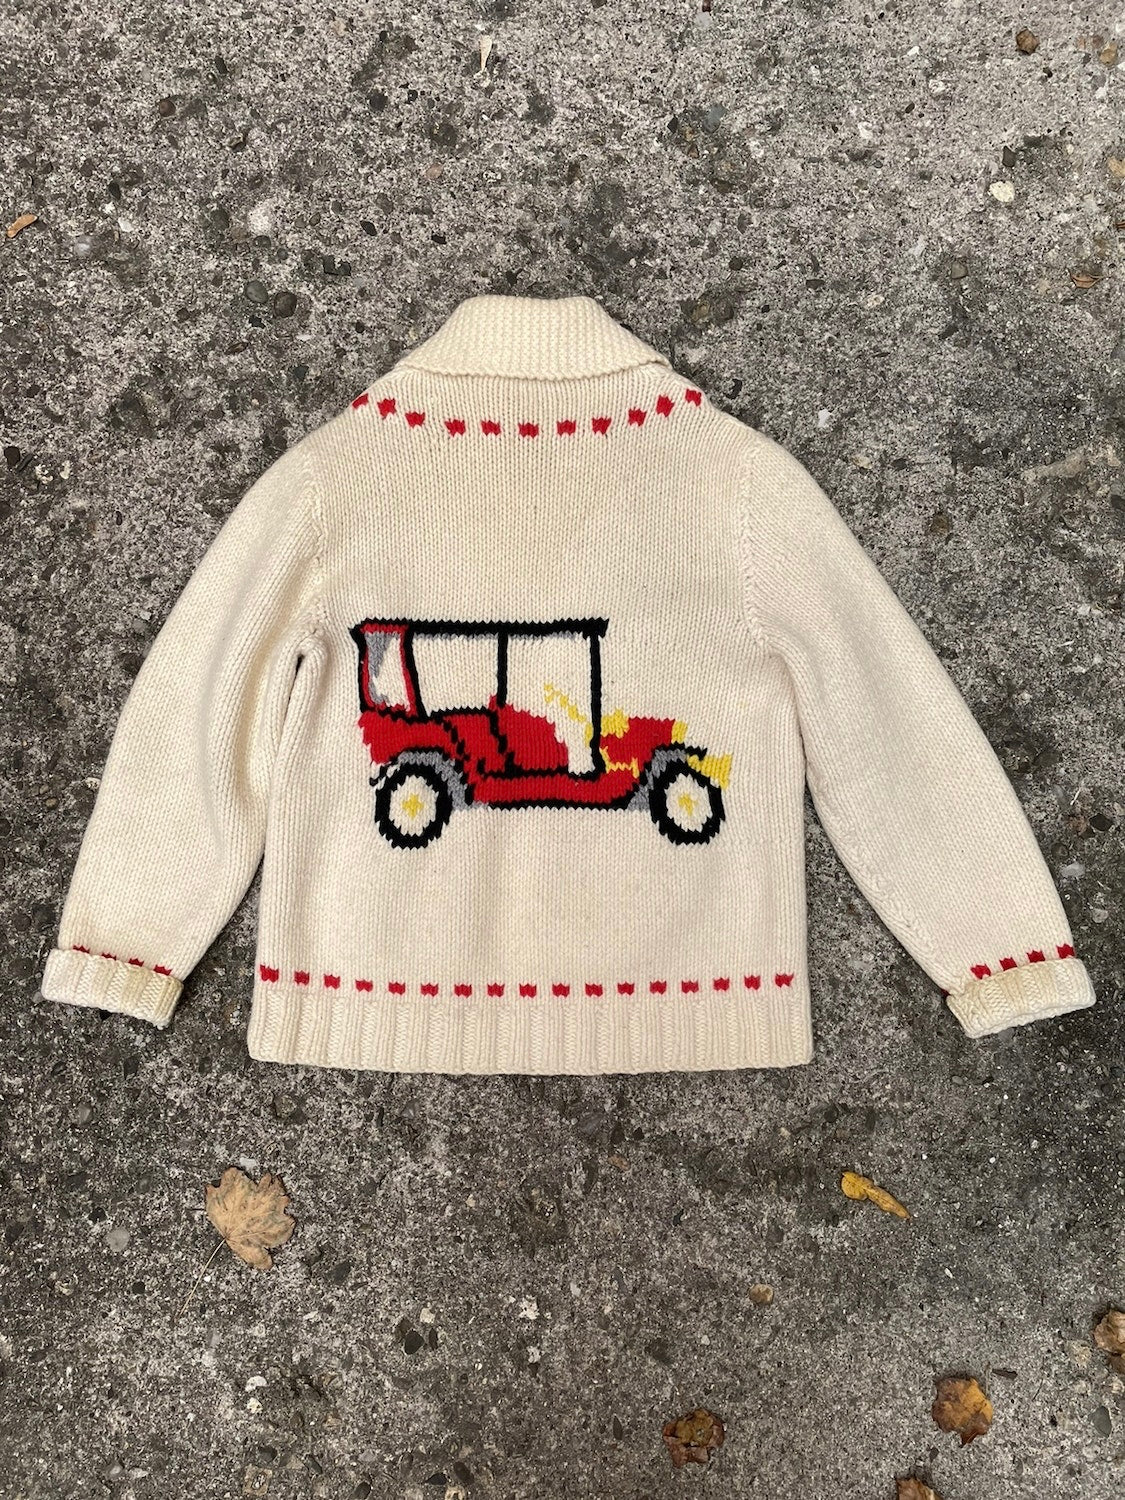 1950's Model T Car Cowichan Knit Sweater - XL